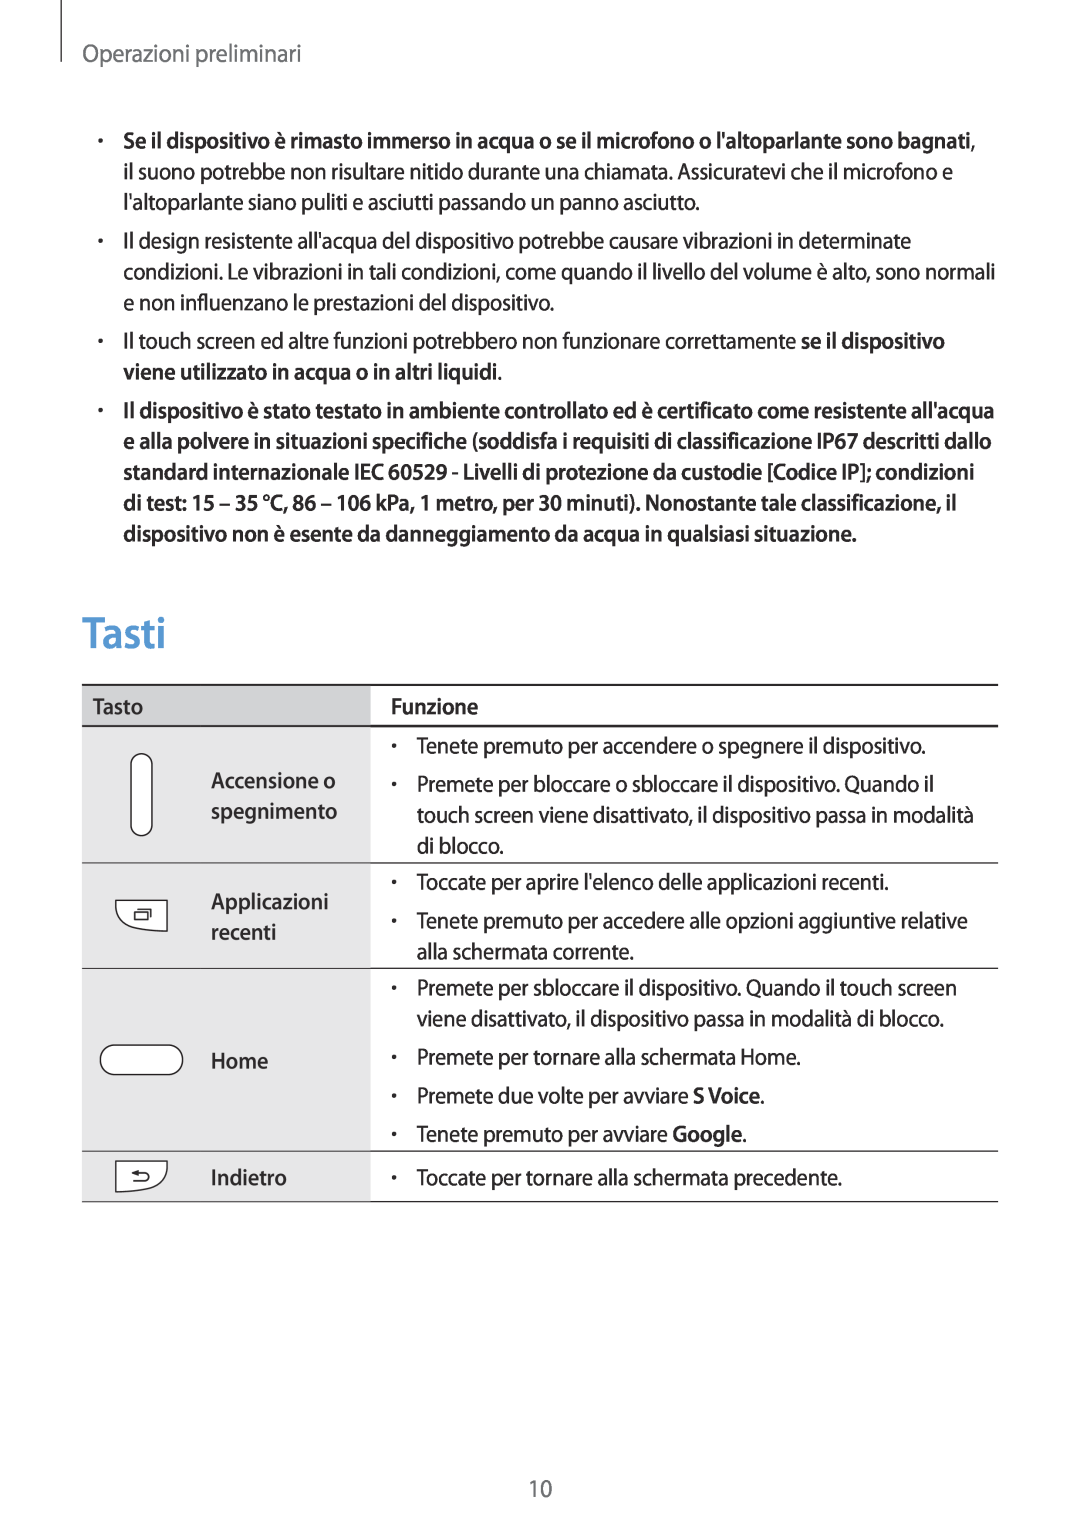 Samsung SM-G900FZKAAMO manual Tasti, Tasto, Funzione, Accensione o, spegnimento, Applicazioni, recenti, Home, Indietro 